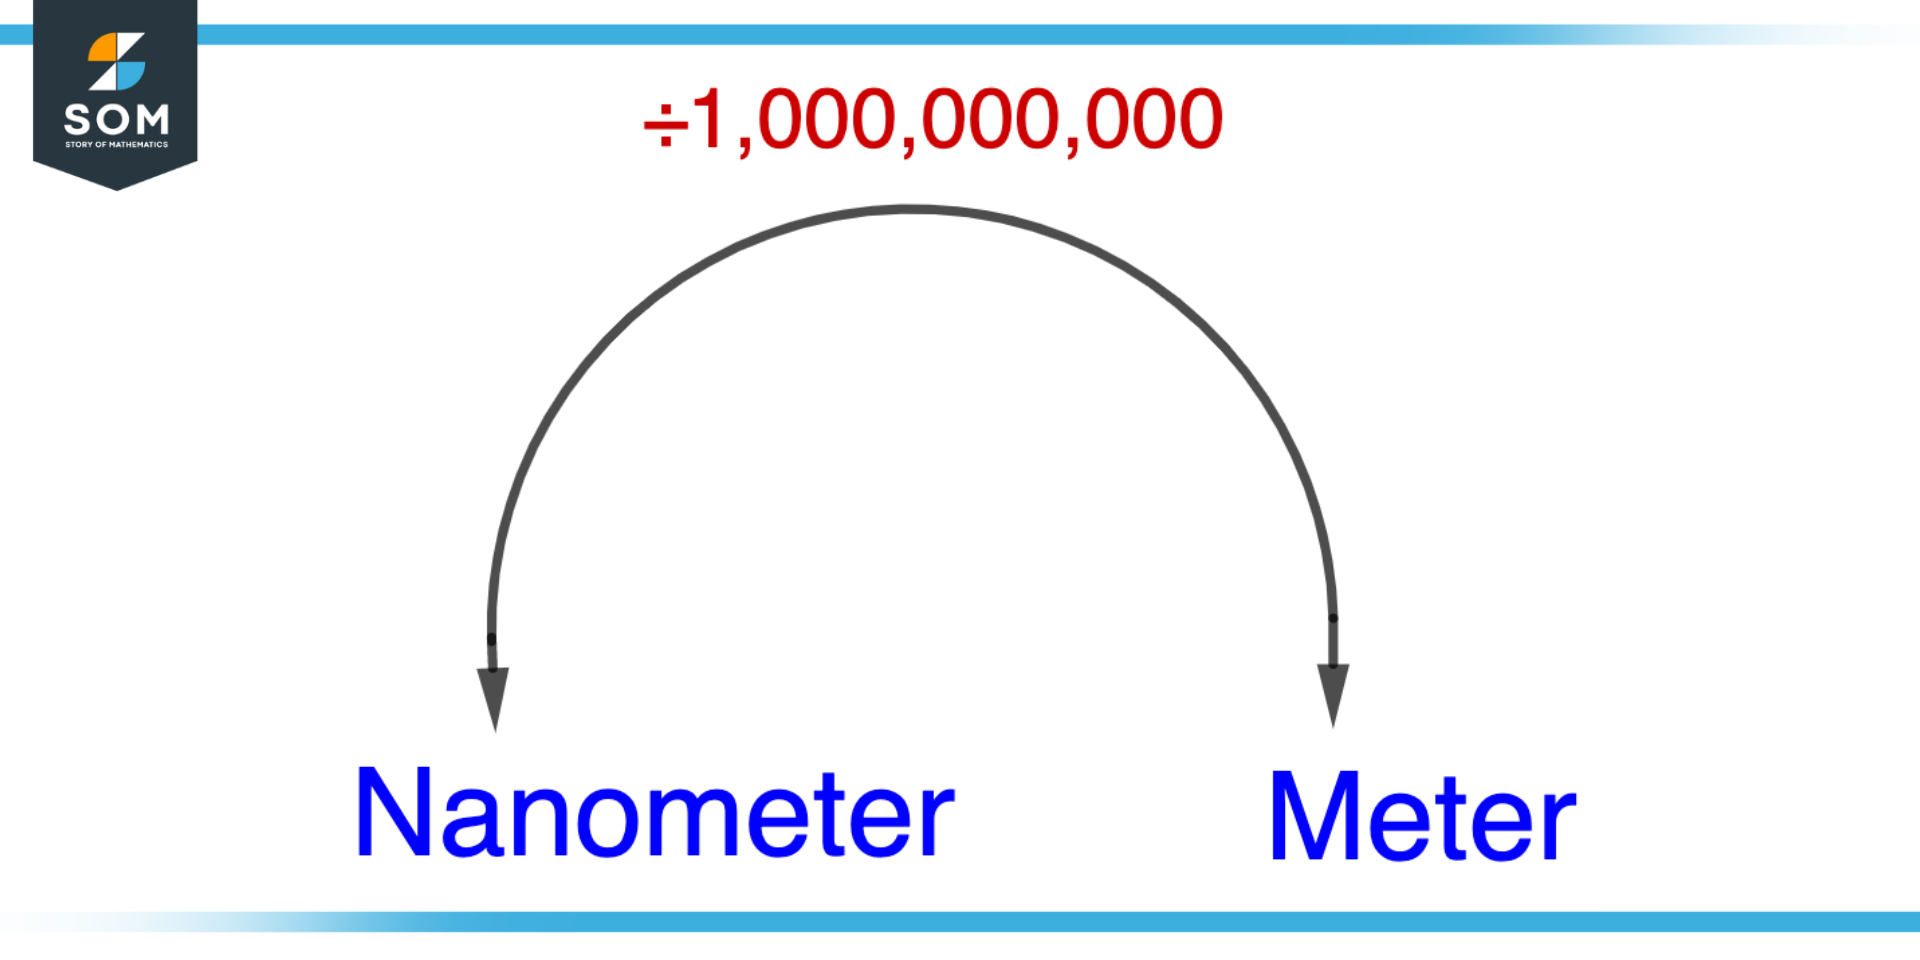 Converting Nanometer to Meter